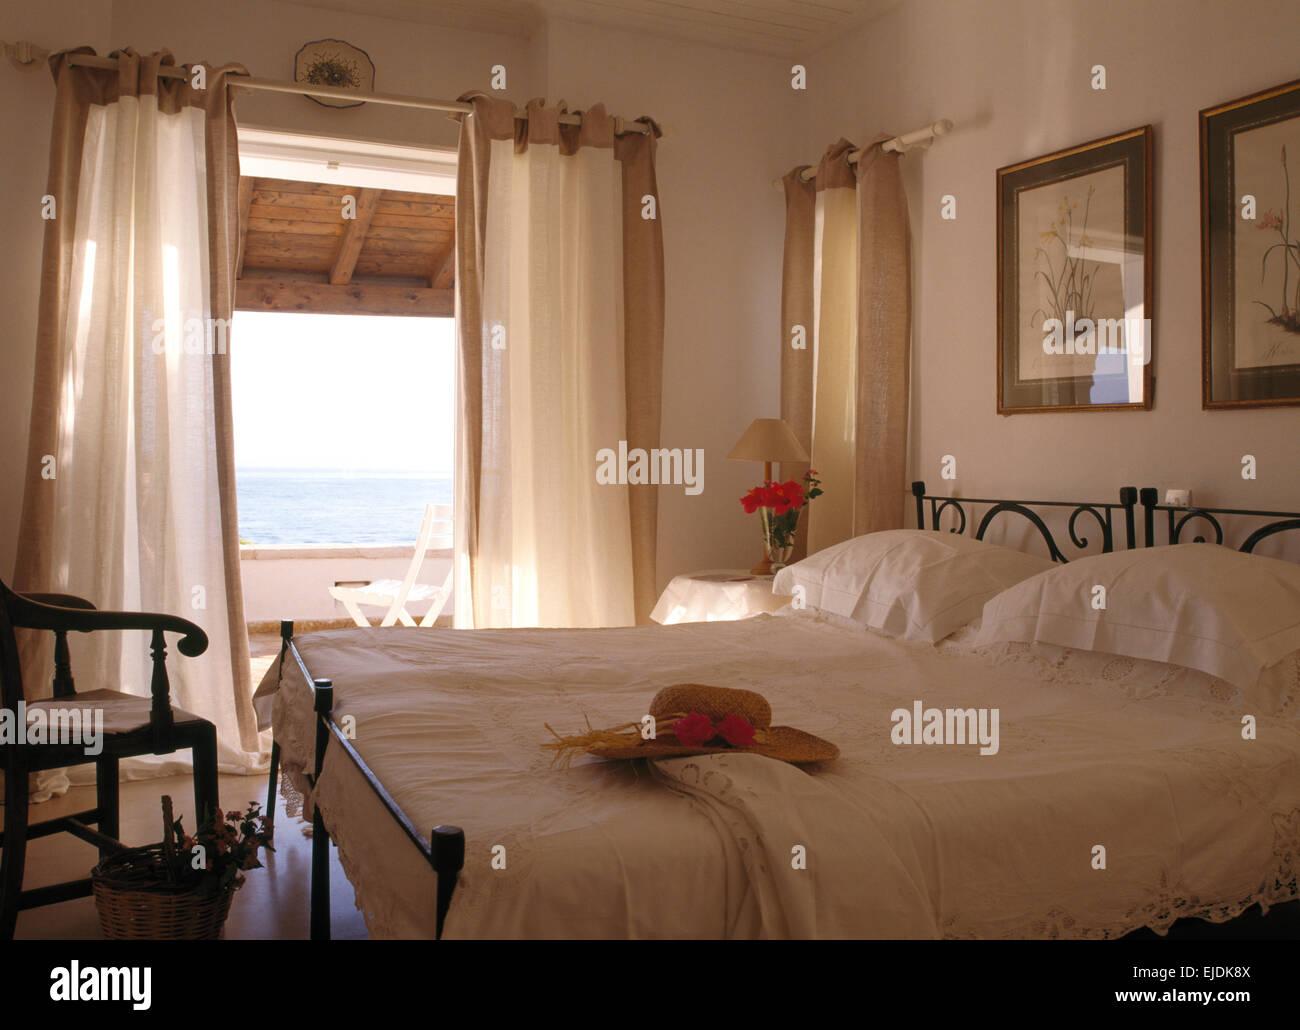 Biancheria da letto bianca su letti in ferro battuto in camera da letto costiera con tende bianche su porte di balcone con vista sul mare Foto Stock